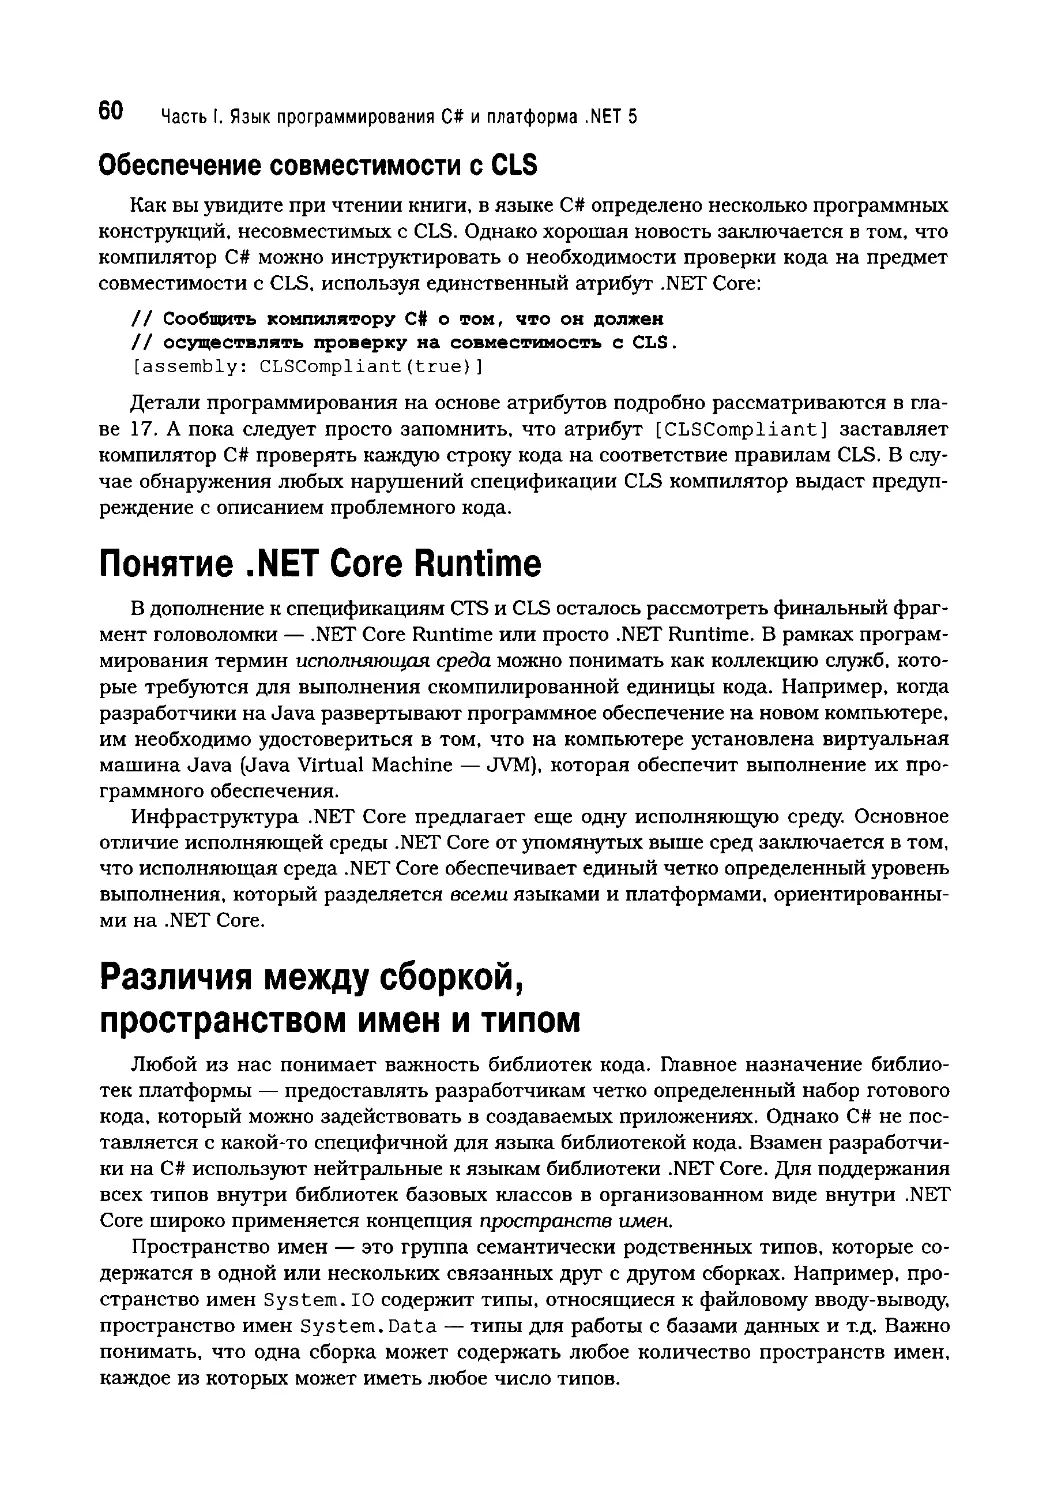 Понятие .NET Core Runtime
Различия между сборкой, пространством имен и типом